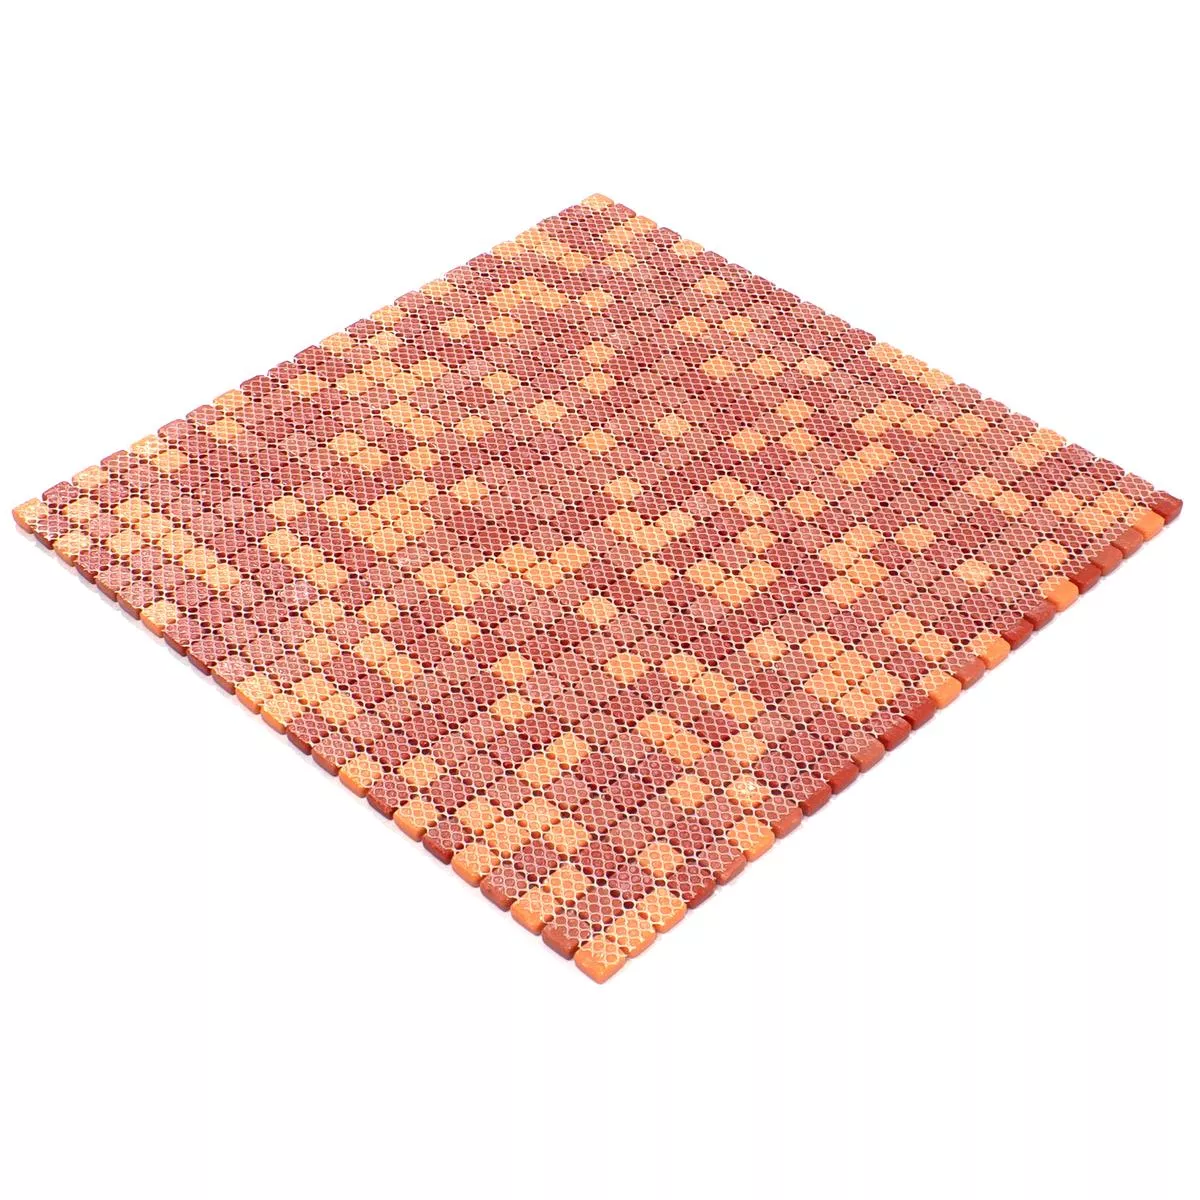 Mozaiki Szklana Płytki Delight Czerwone-Pomarańczowy Mix